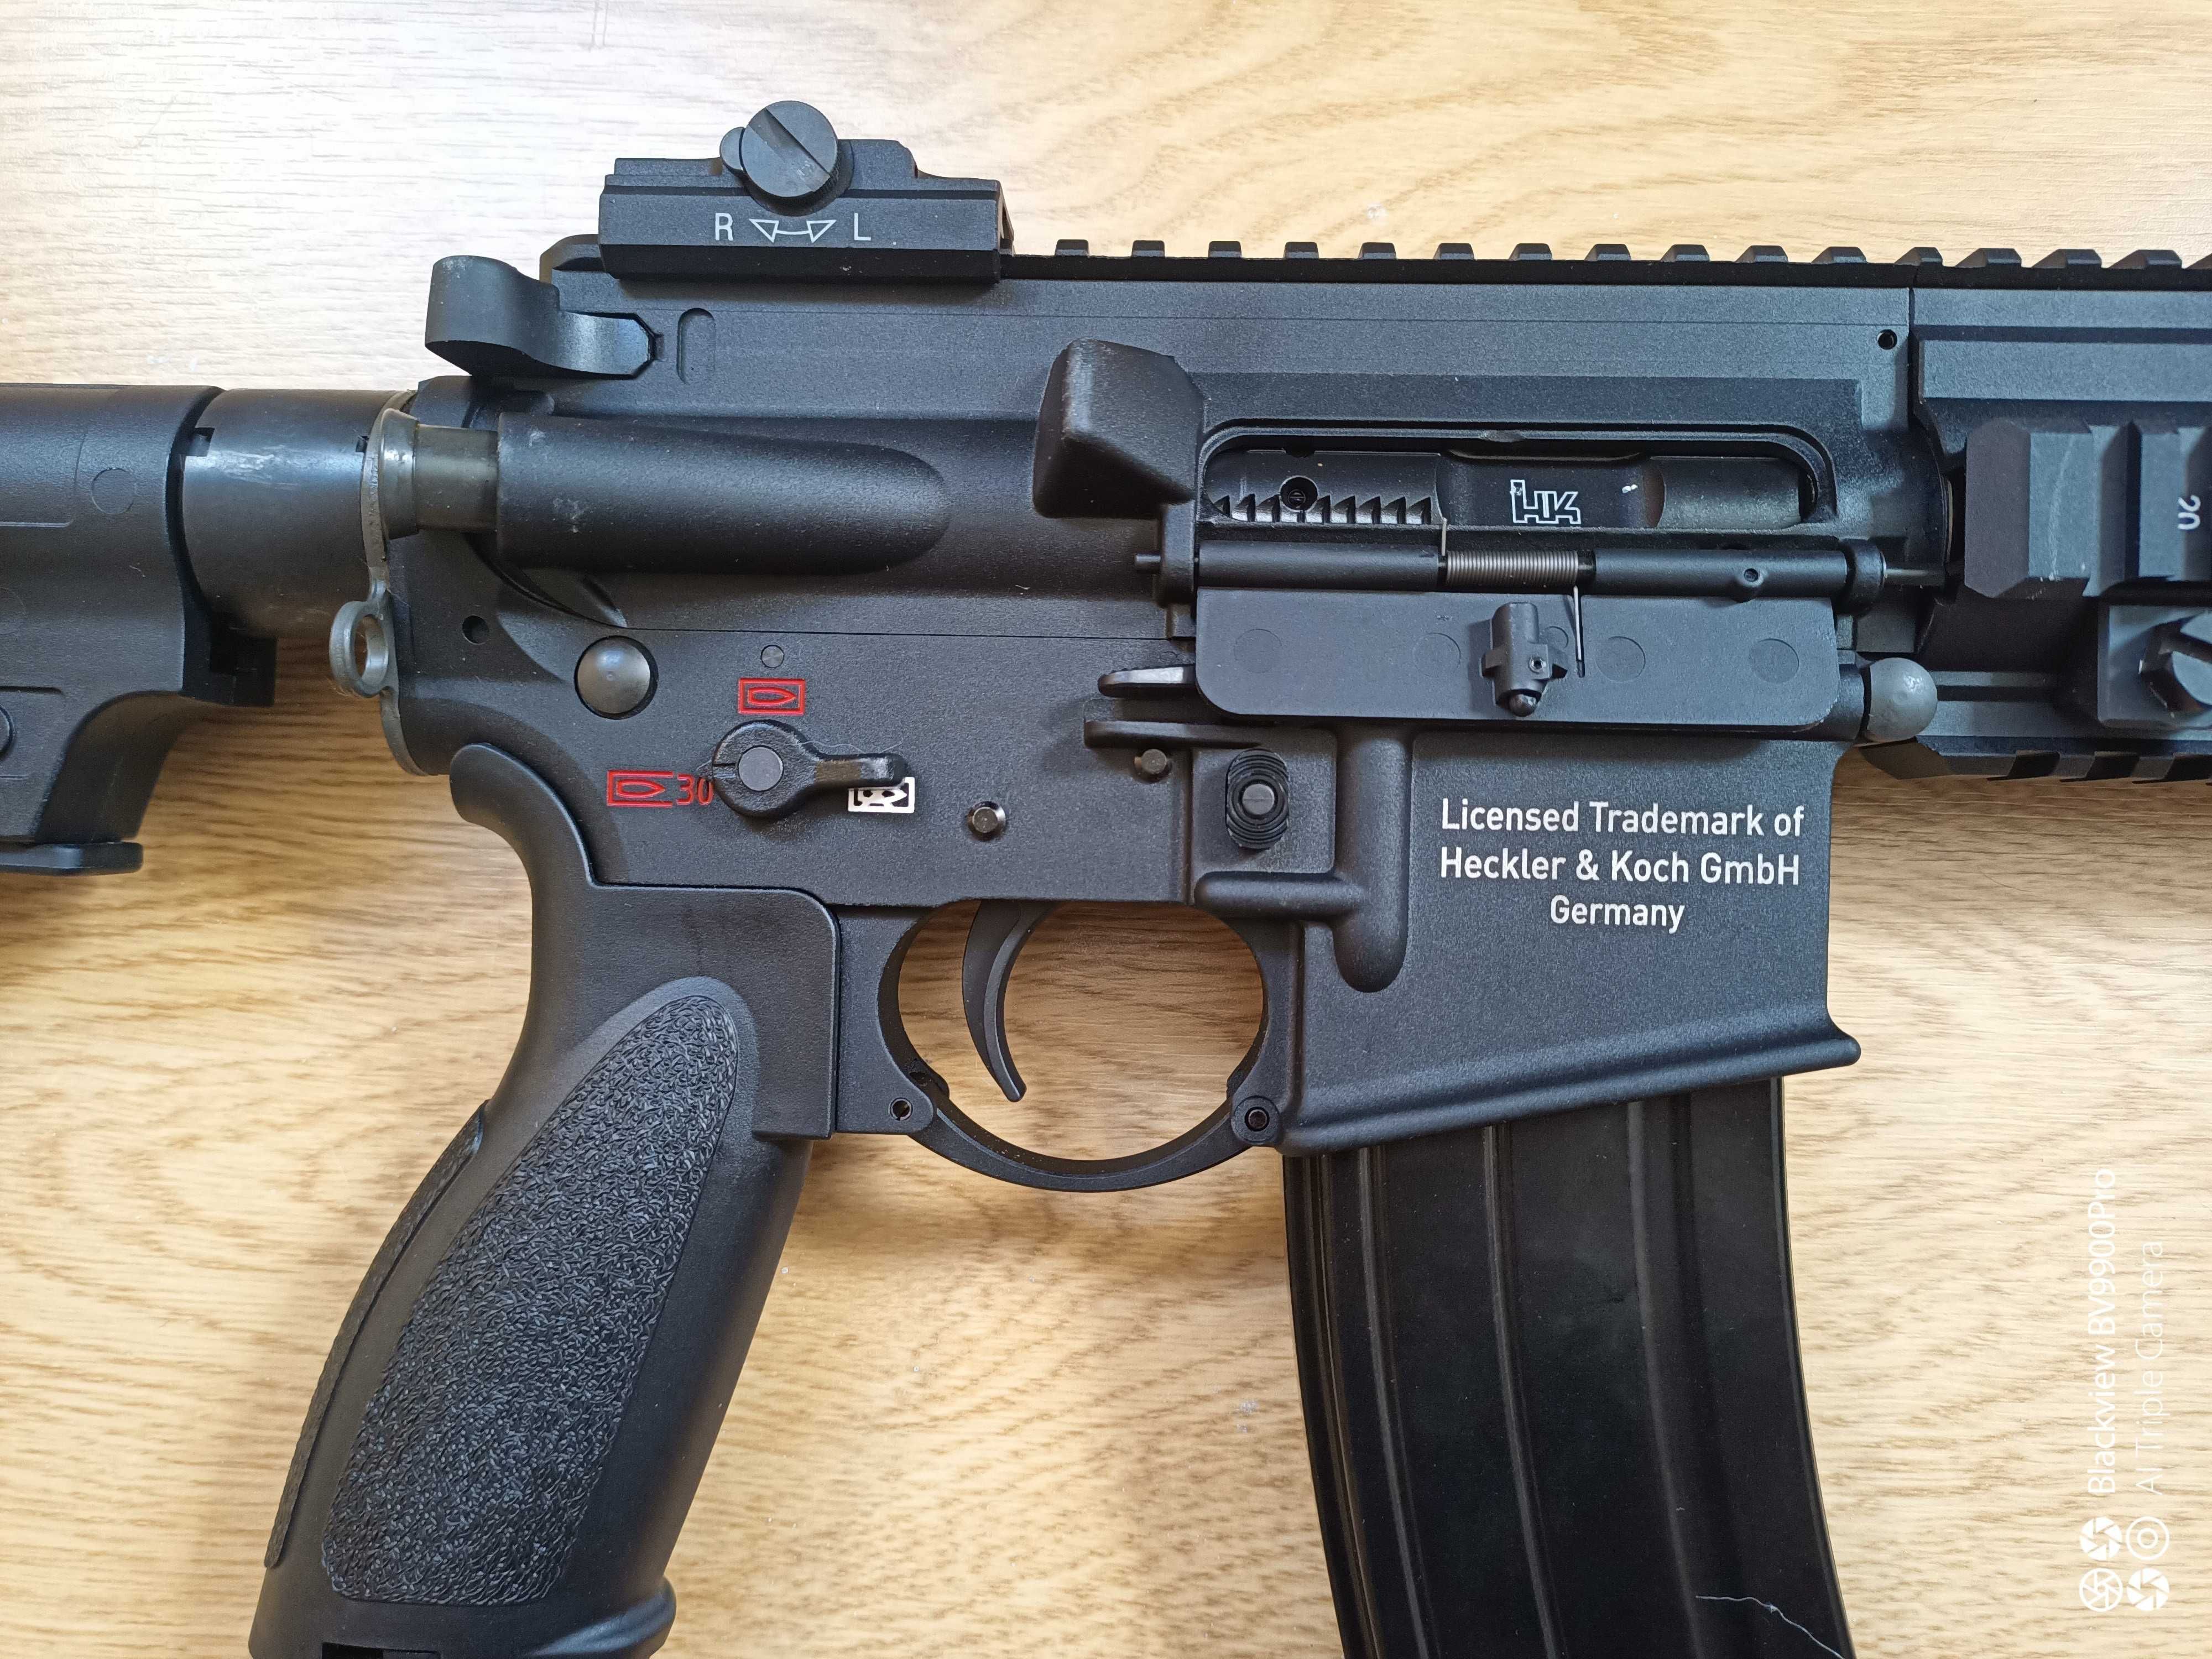 HK416a5 gbbr da umarex/vfc, com 5 mags!